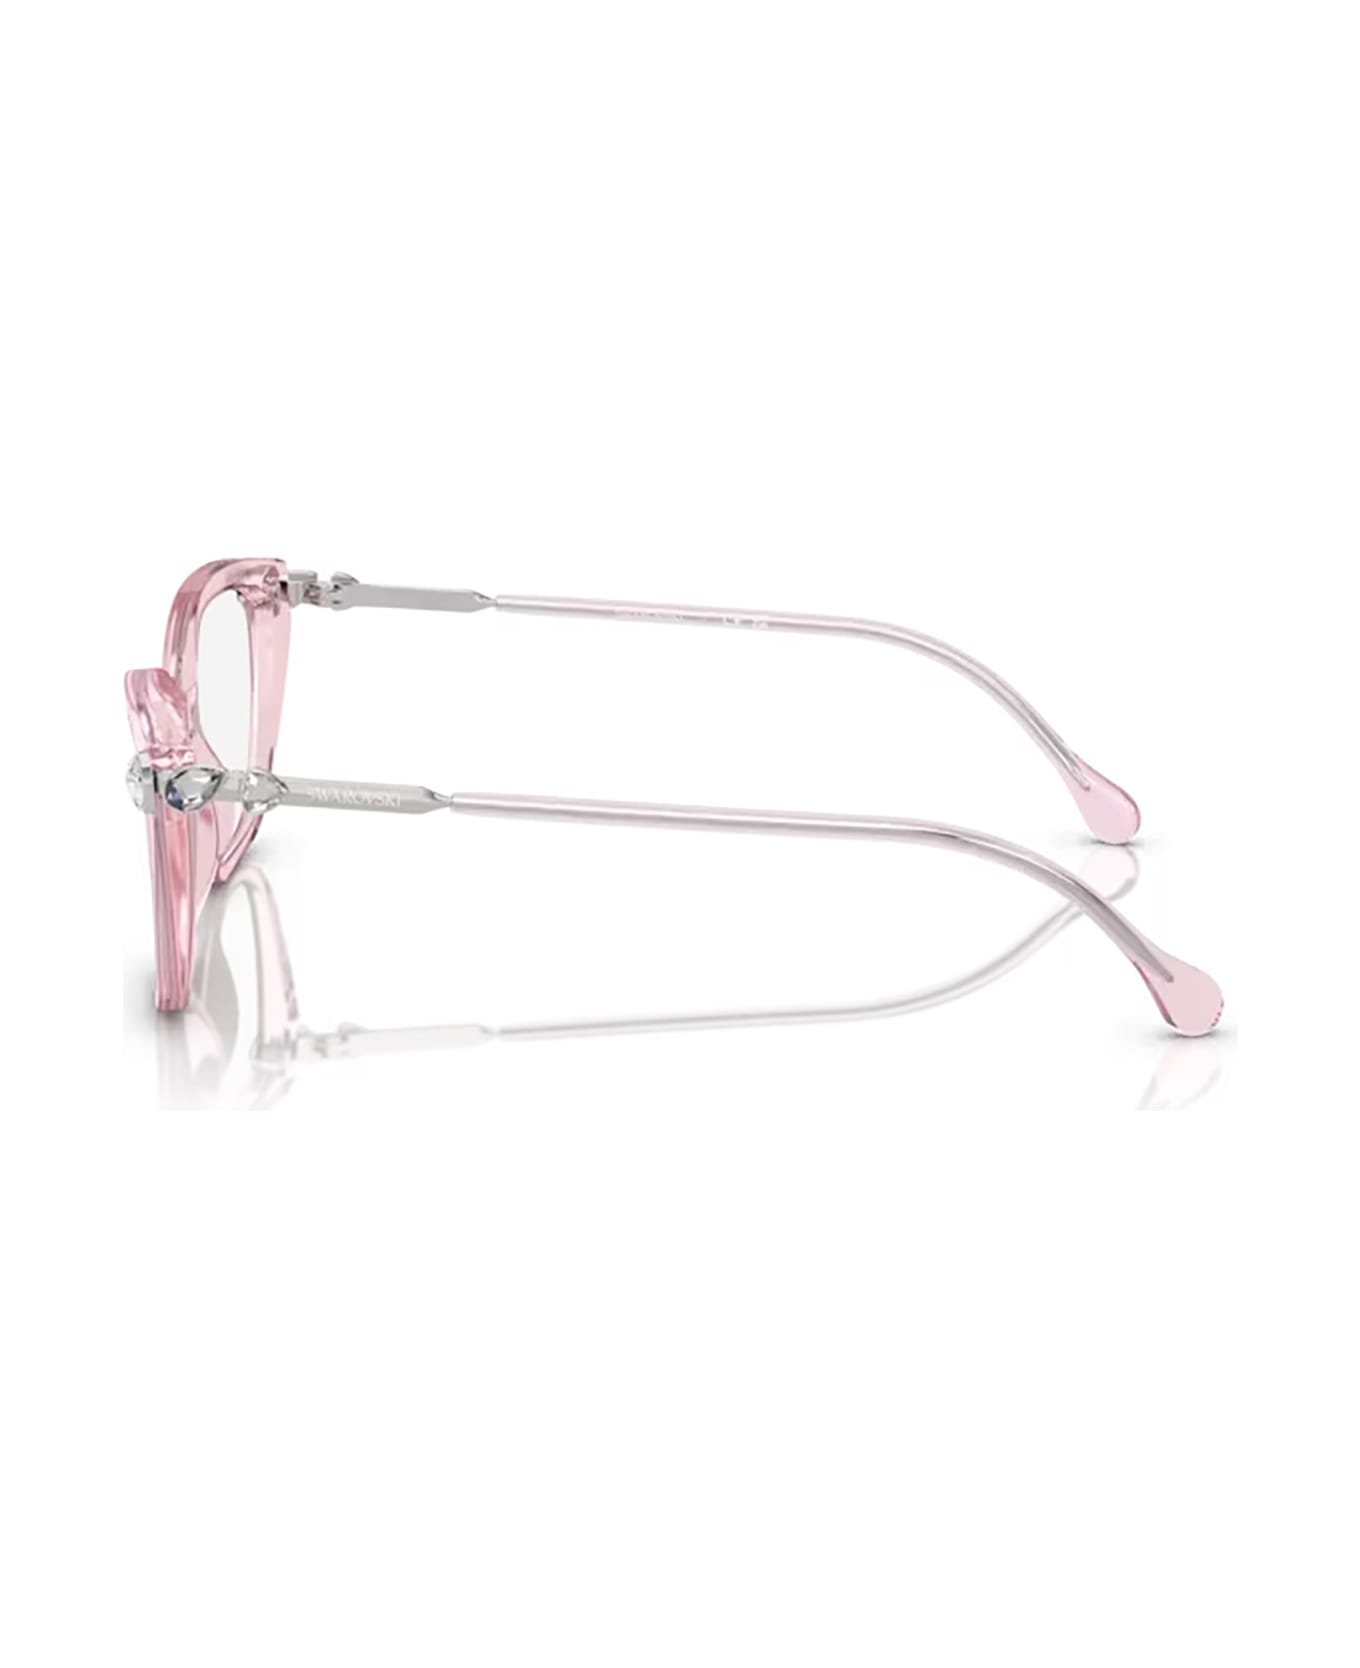 Swarovski Sk2011 Transparent Pink Glasses - Transparent Pink アイウェア